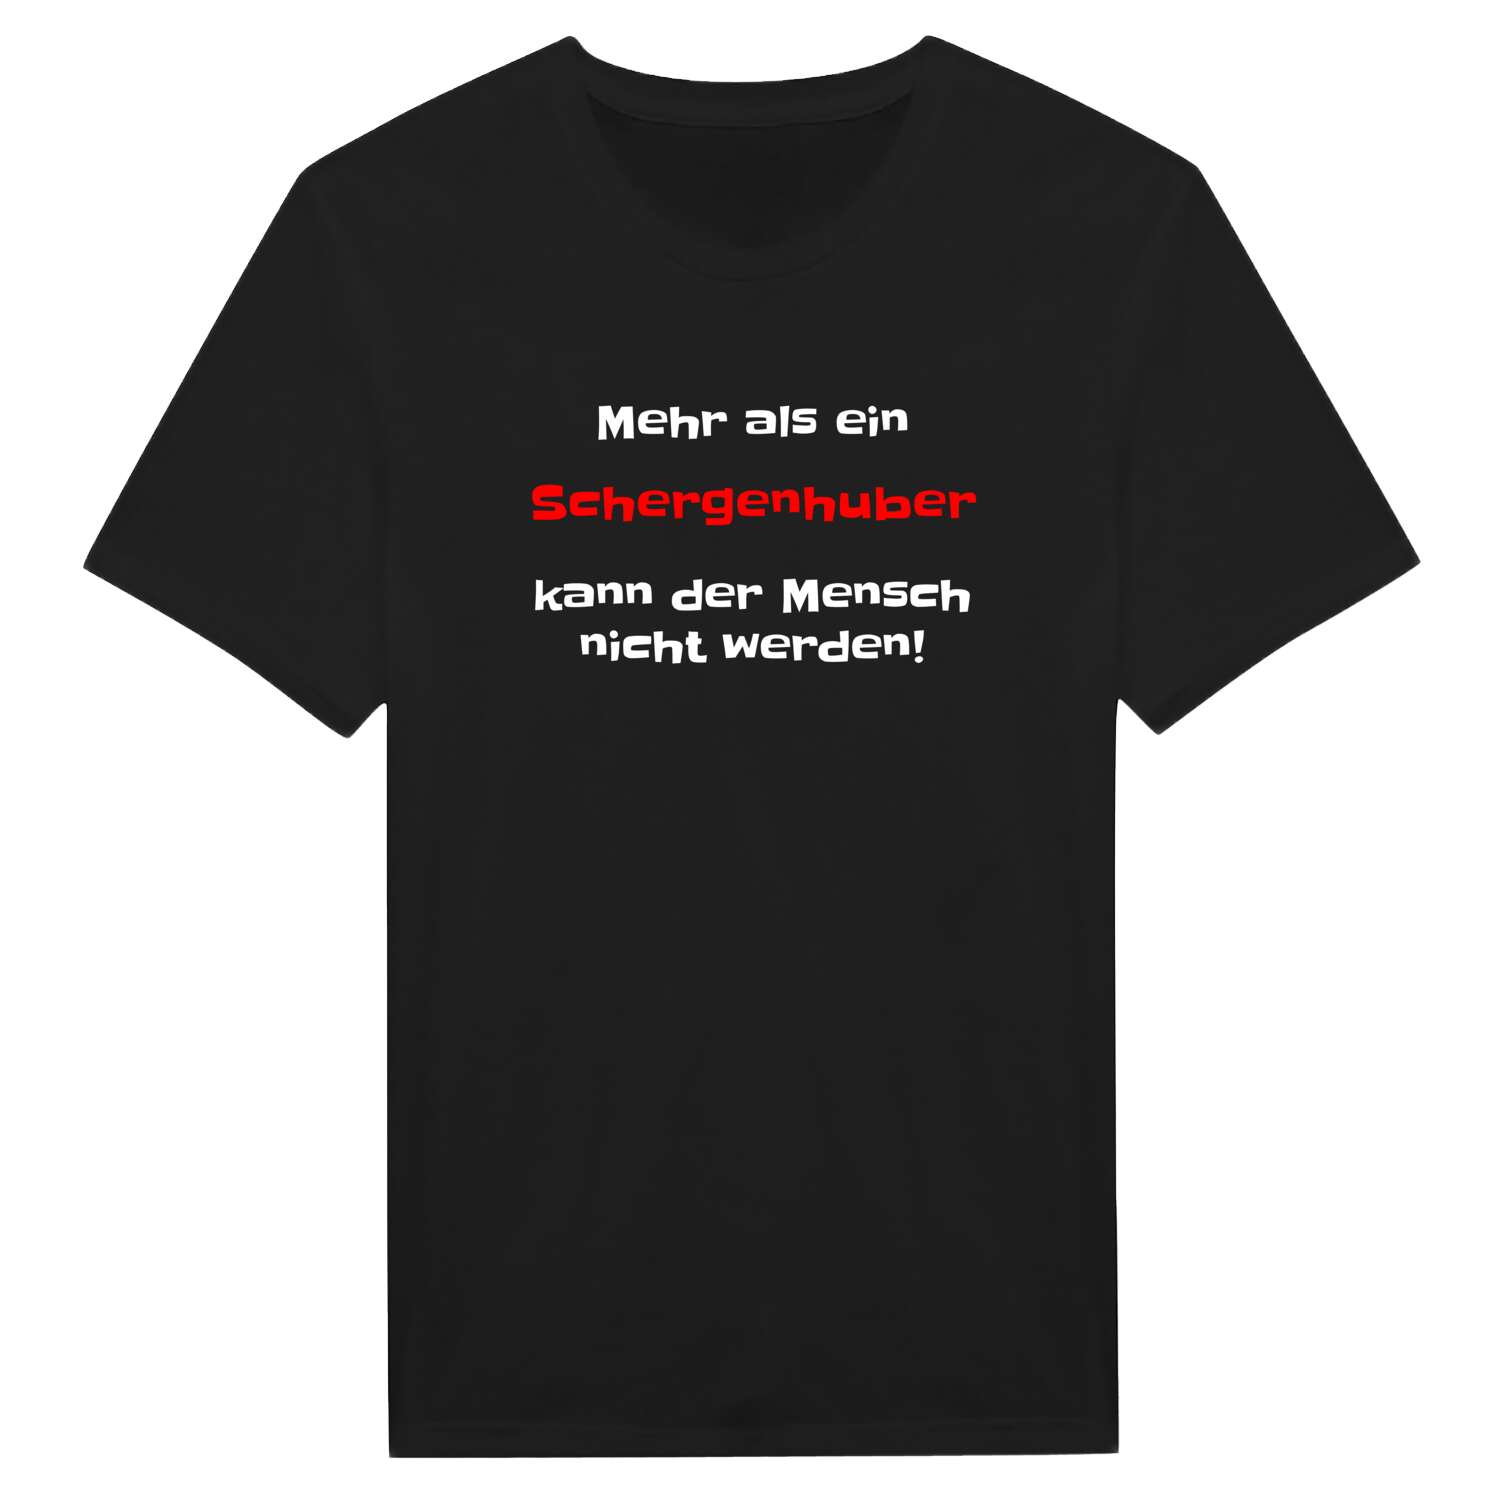 Schergenhub T-Shirt »Mehr als ein«